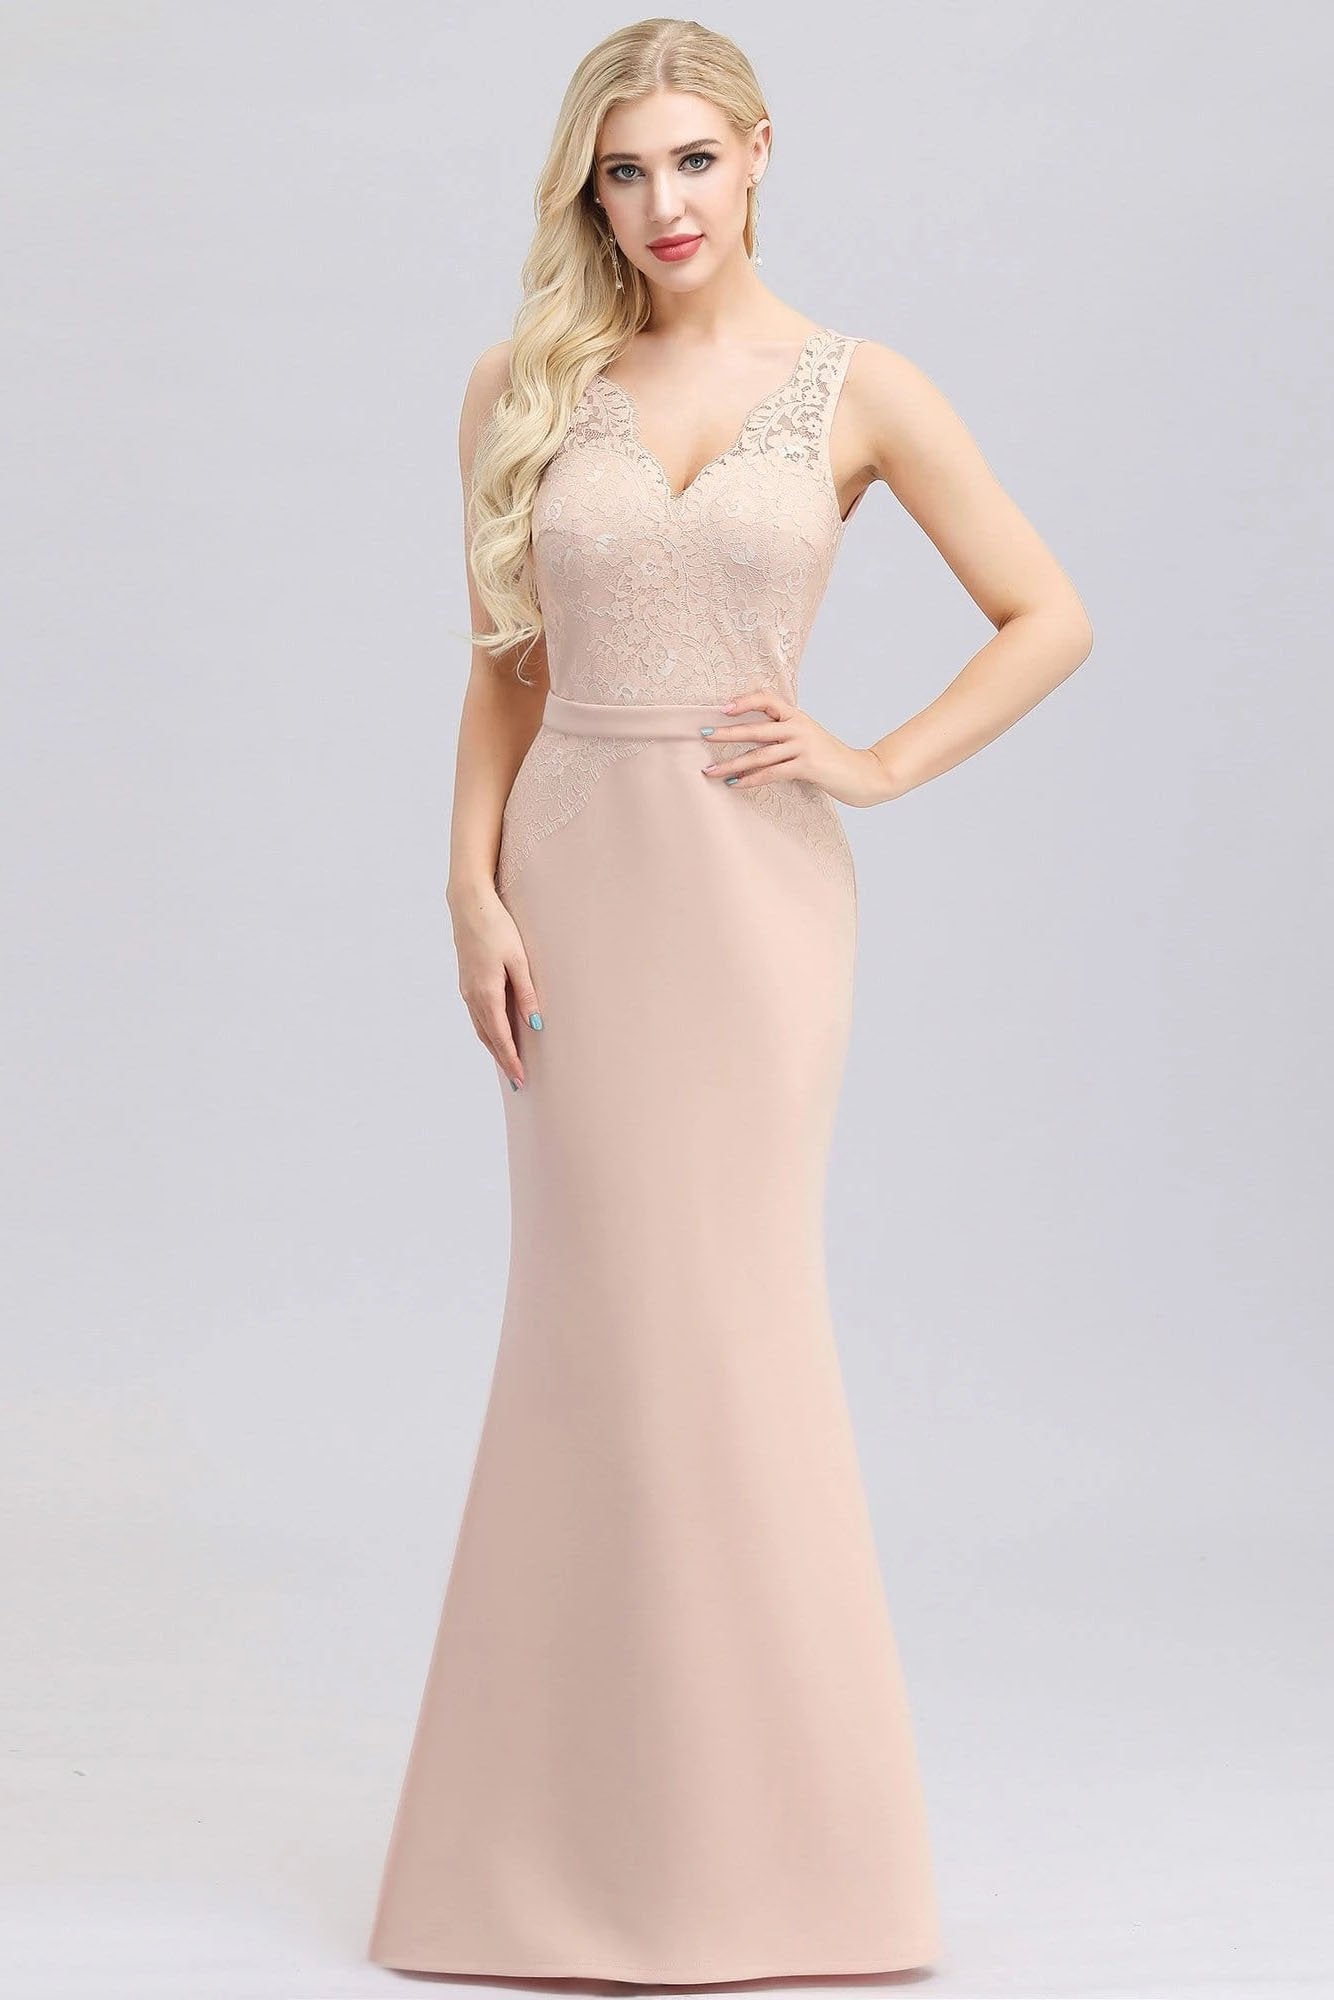 Elegant V-Neck Floral Lace Pink Evening Dress Satin Prom Dresses STC15216